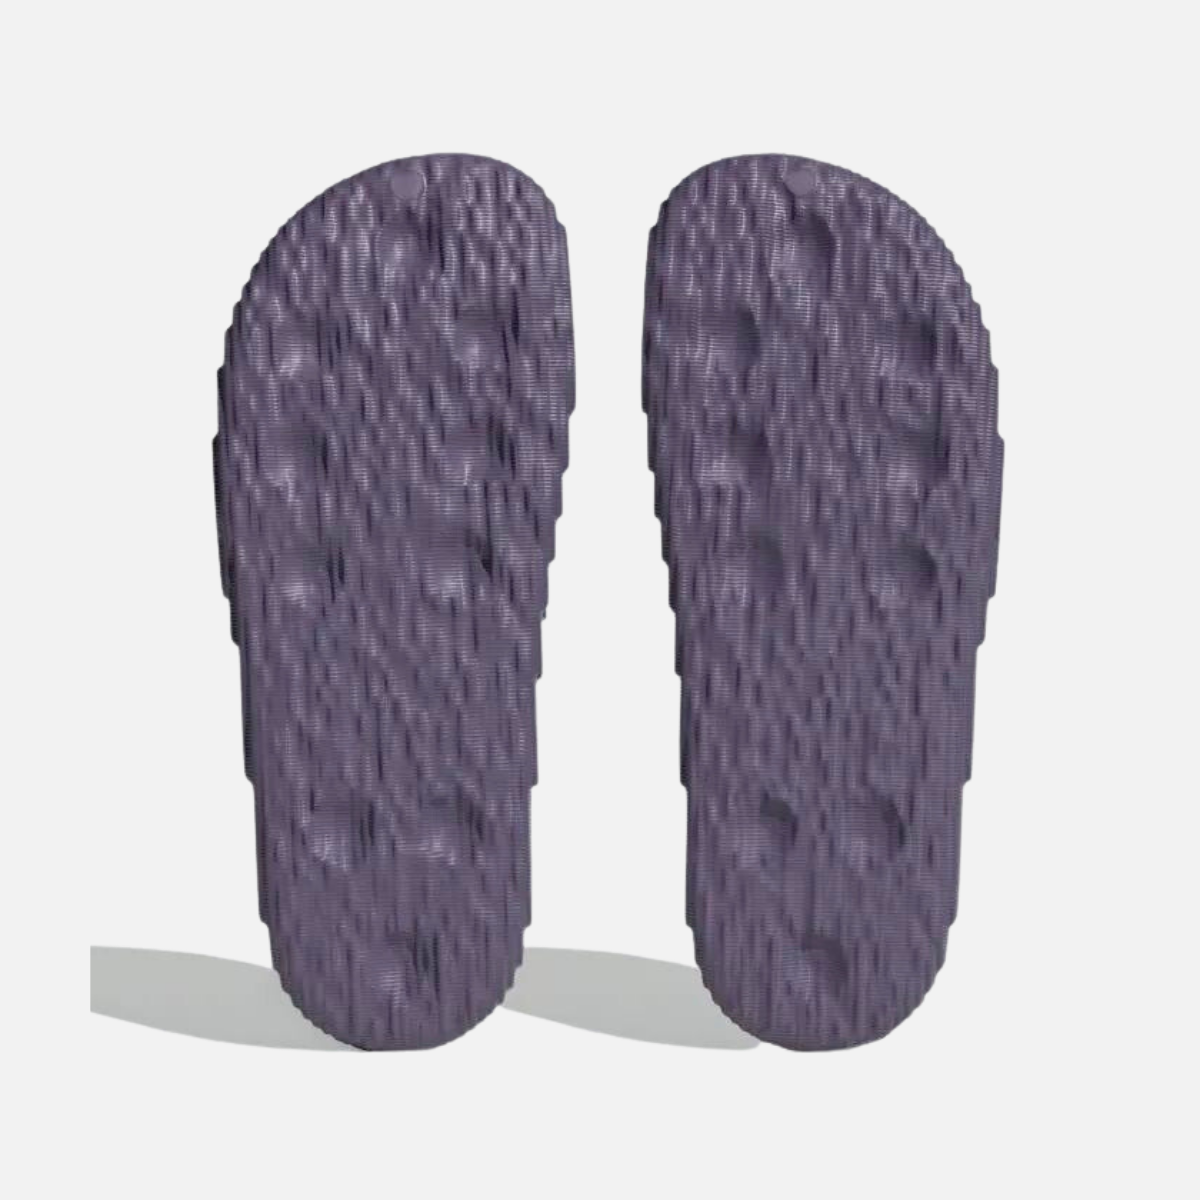 Adidas Adilette 22 Women Slide -Tech Purple/Tech Purple/Core Black